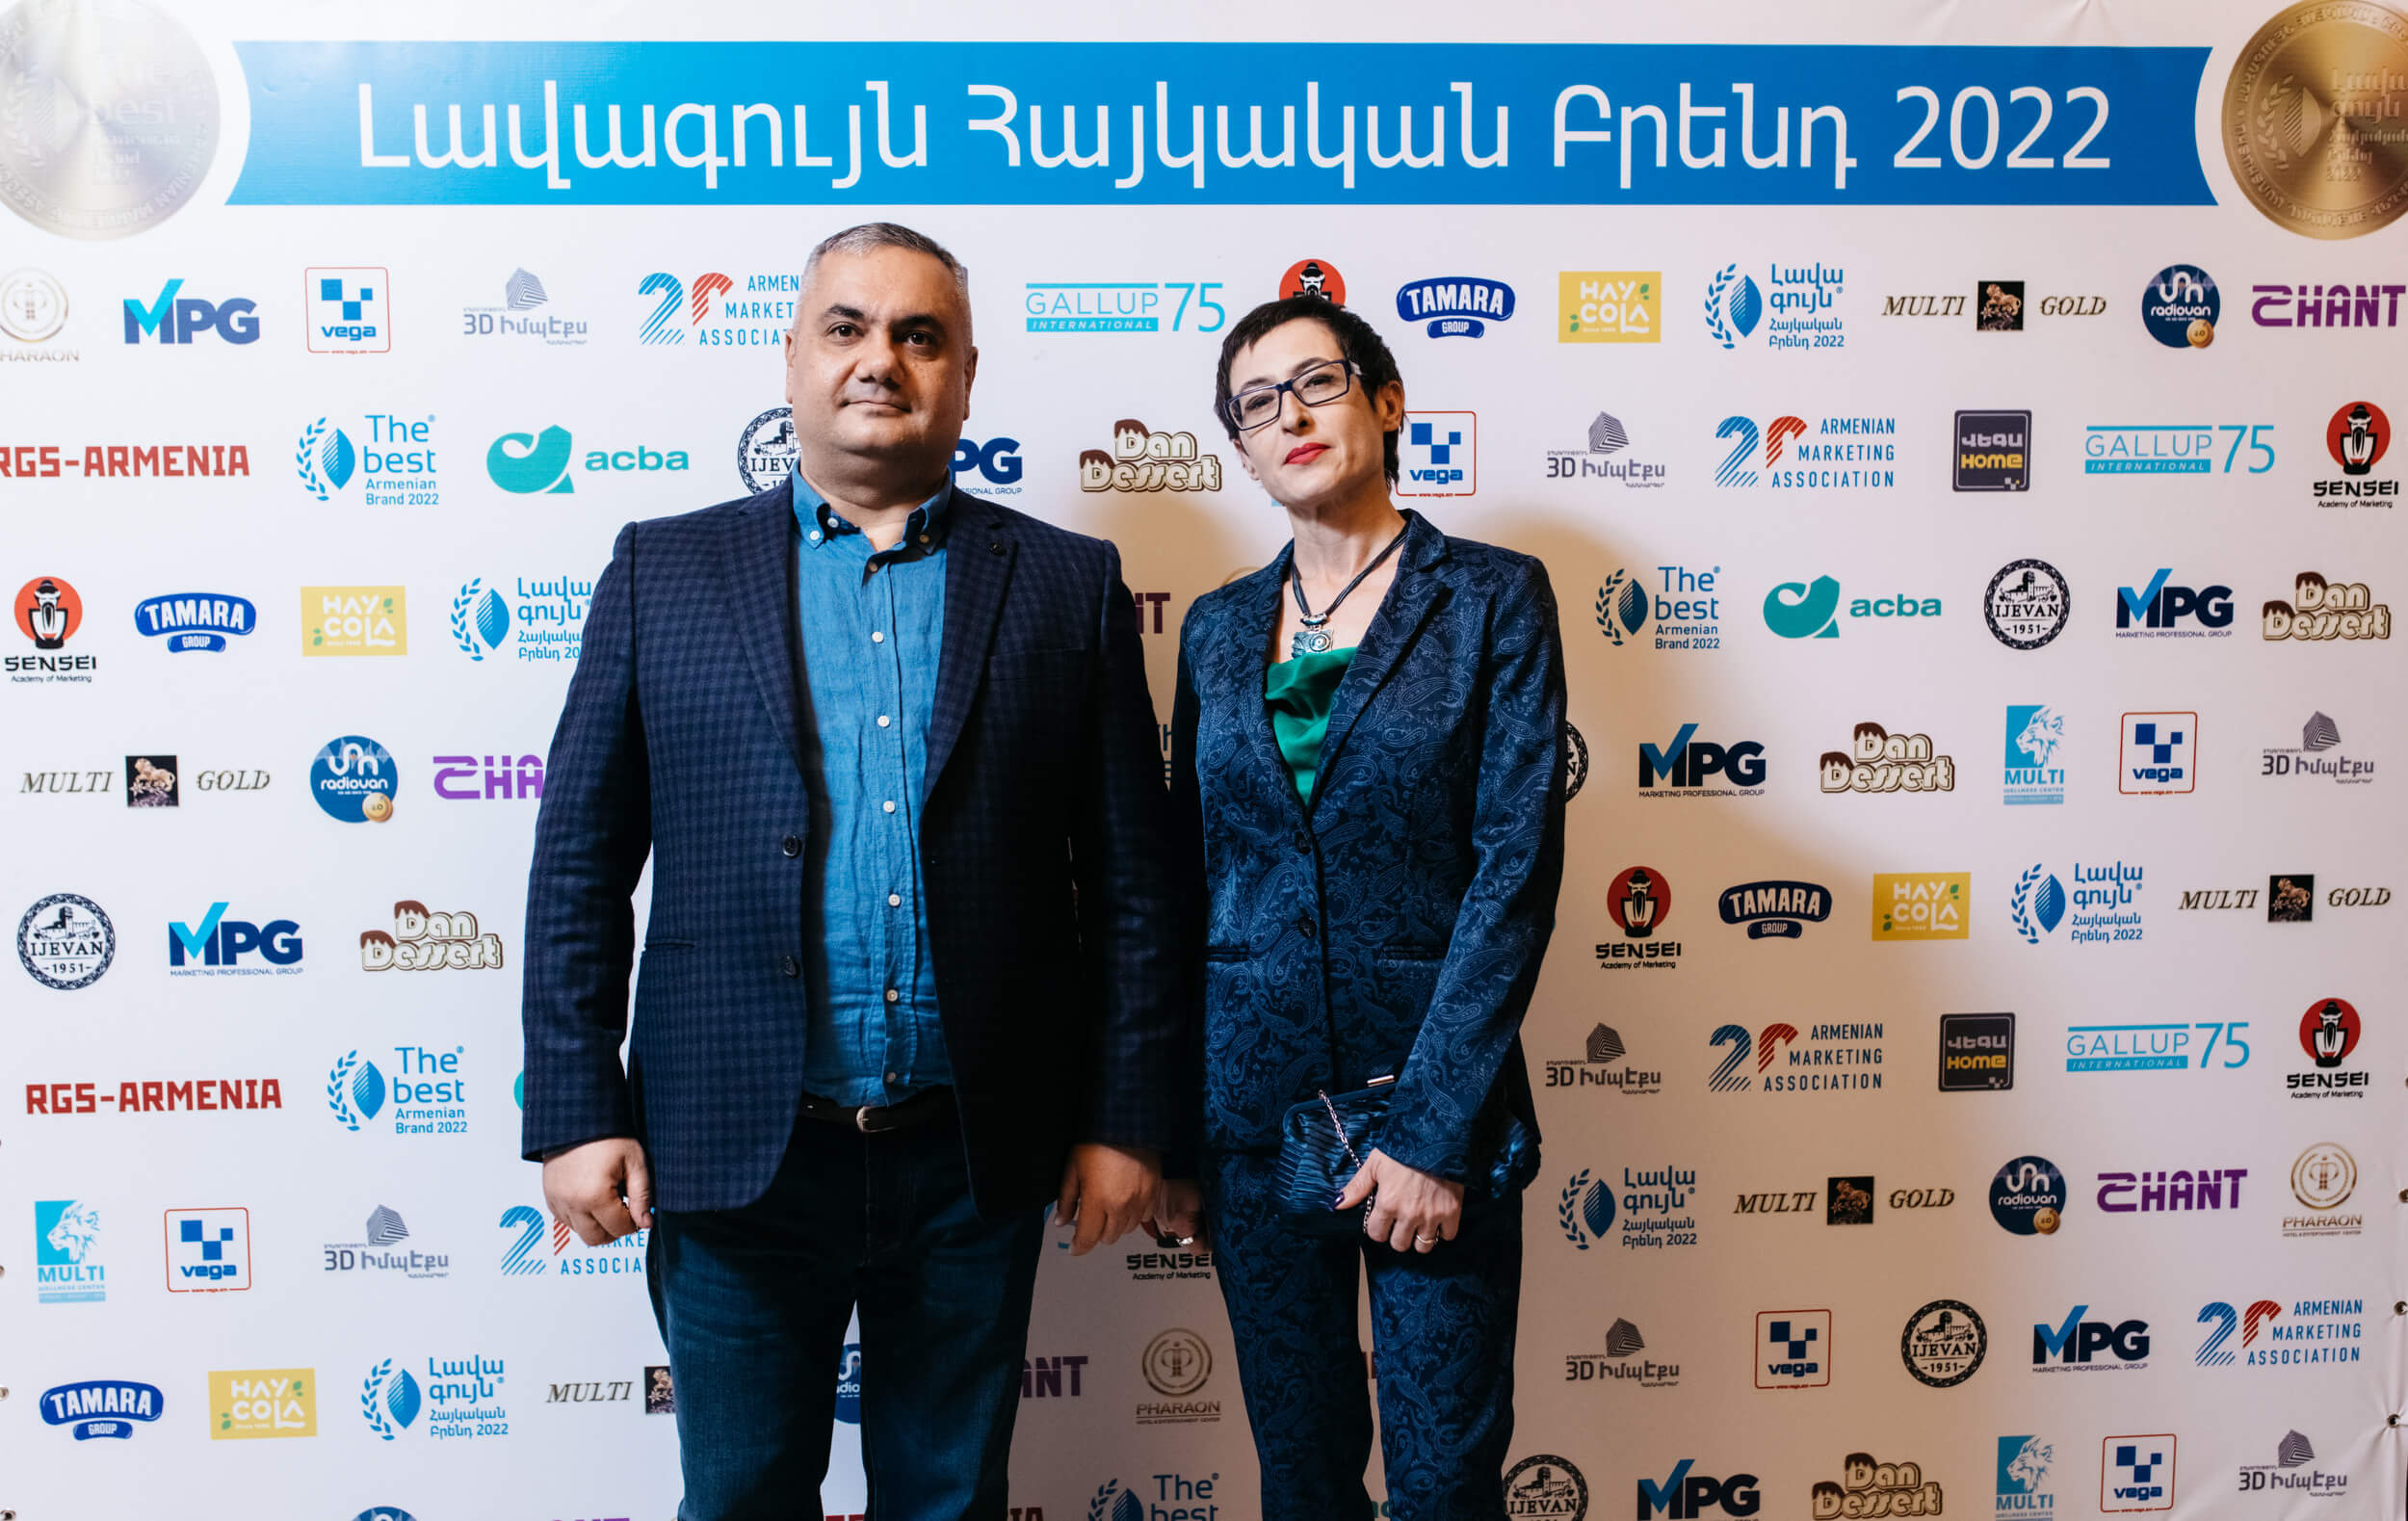 Визуальная айдентика церемонии The Best Armenian Brand–2022